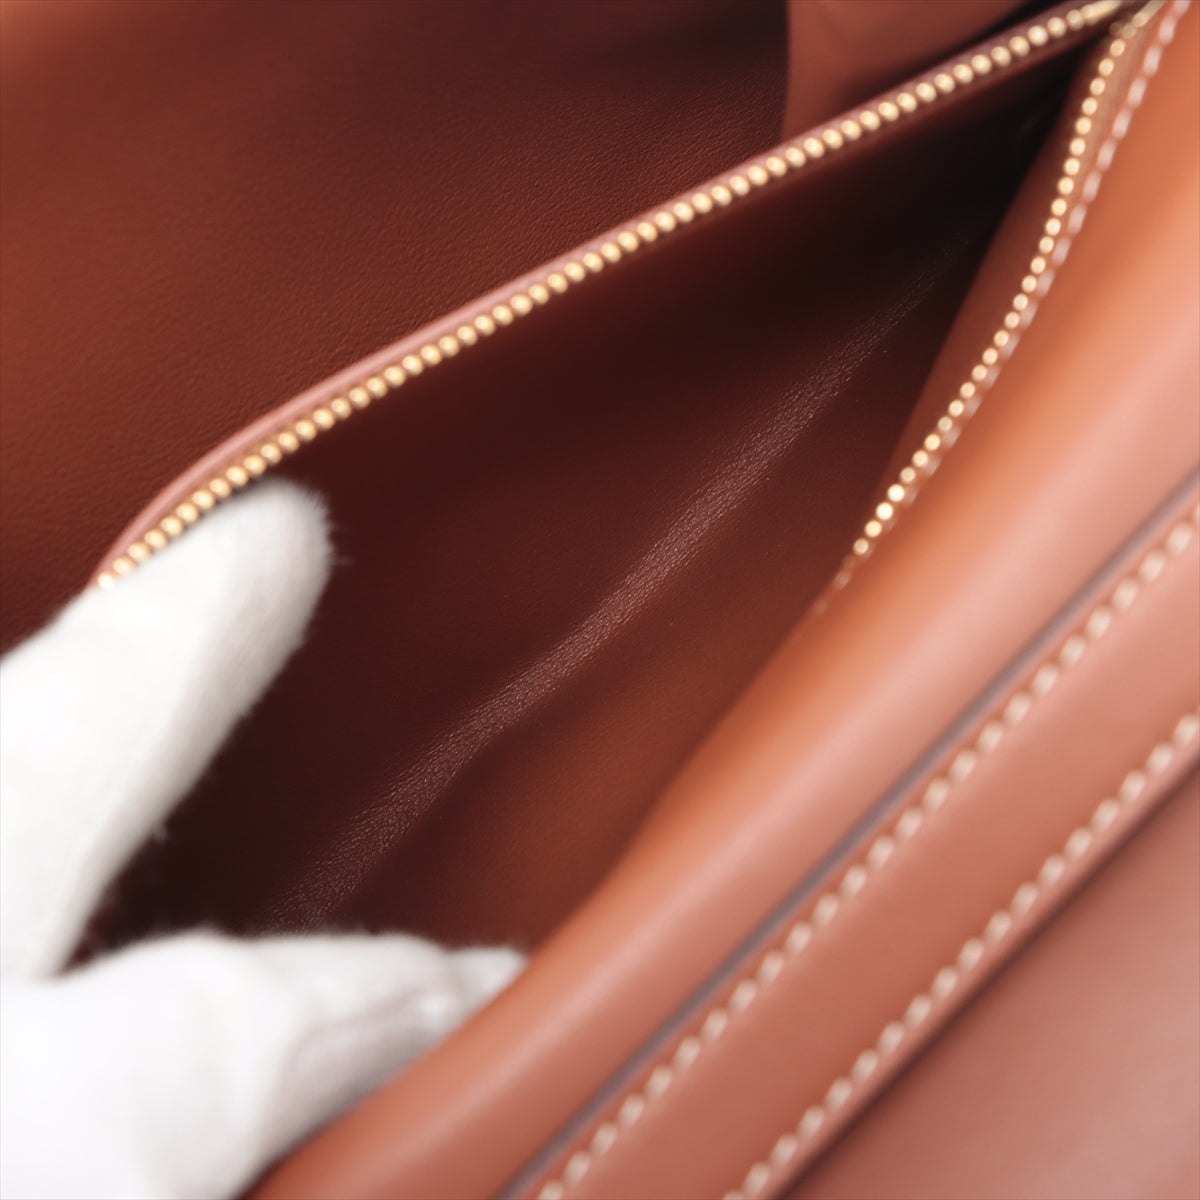 Celine Tabumedium Leather Shoulder Bag Brown